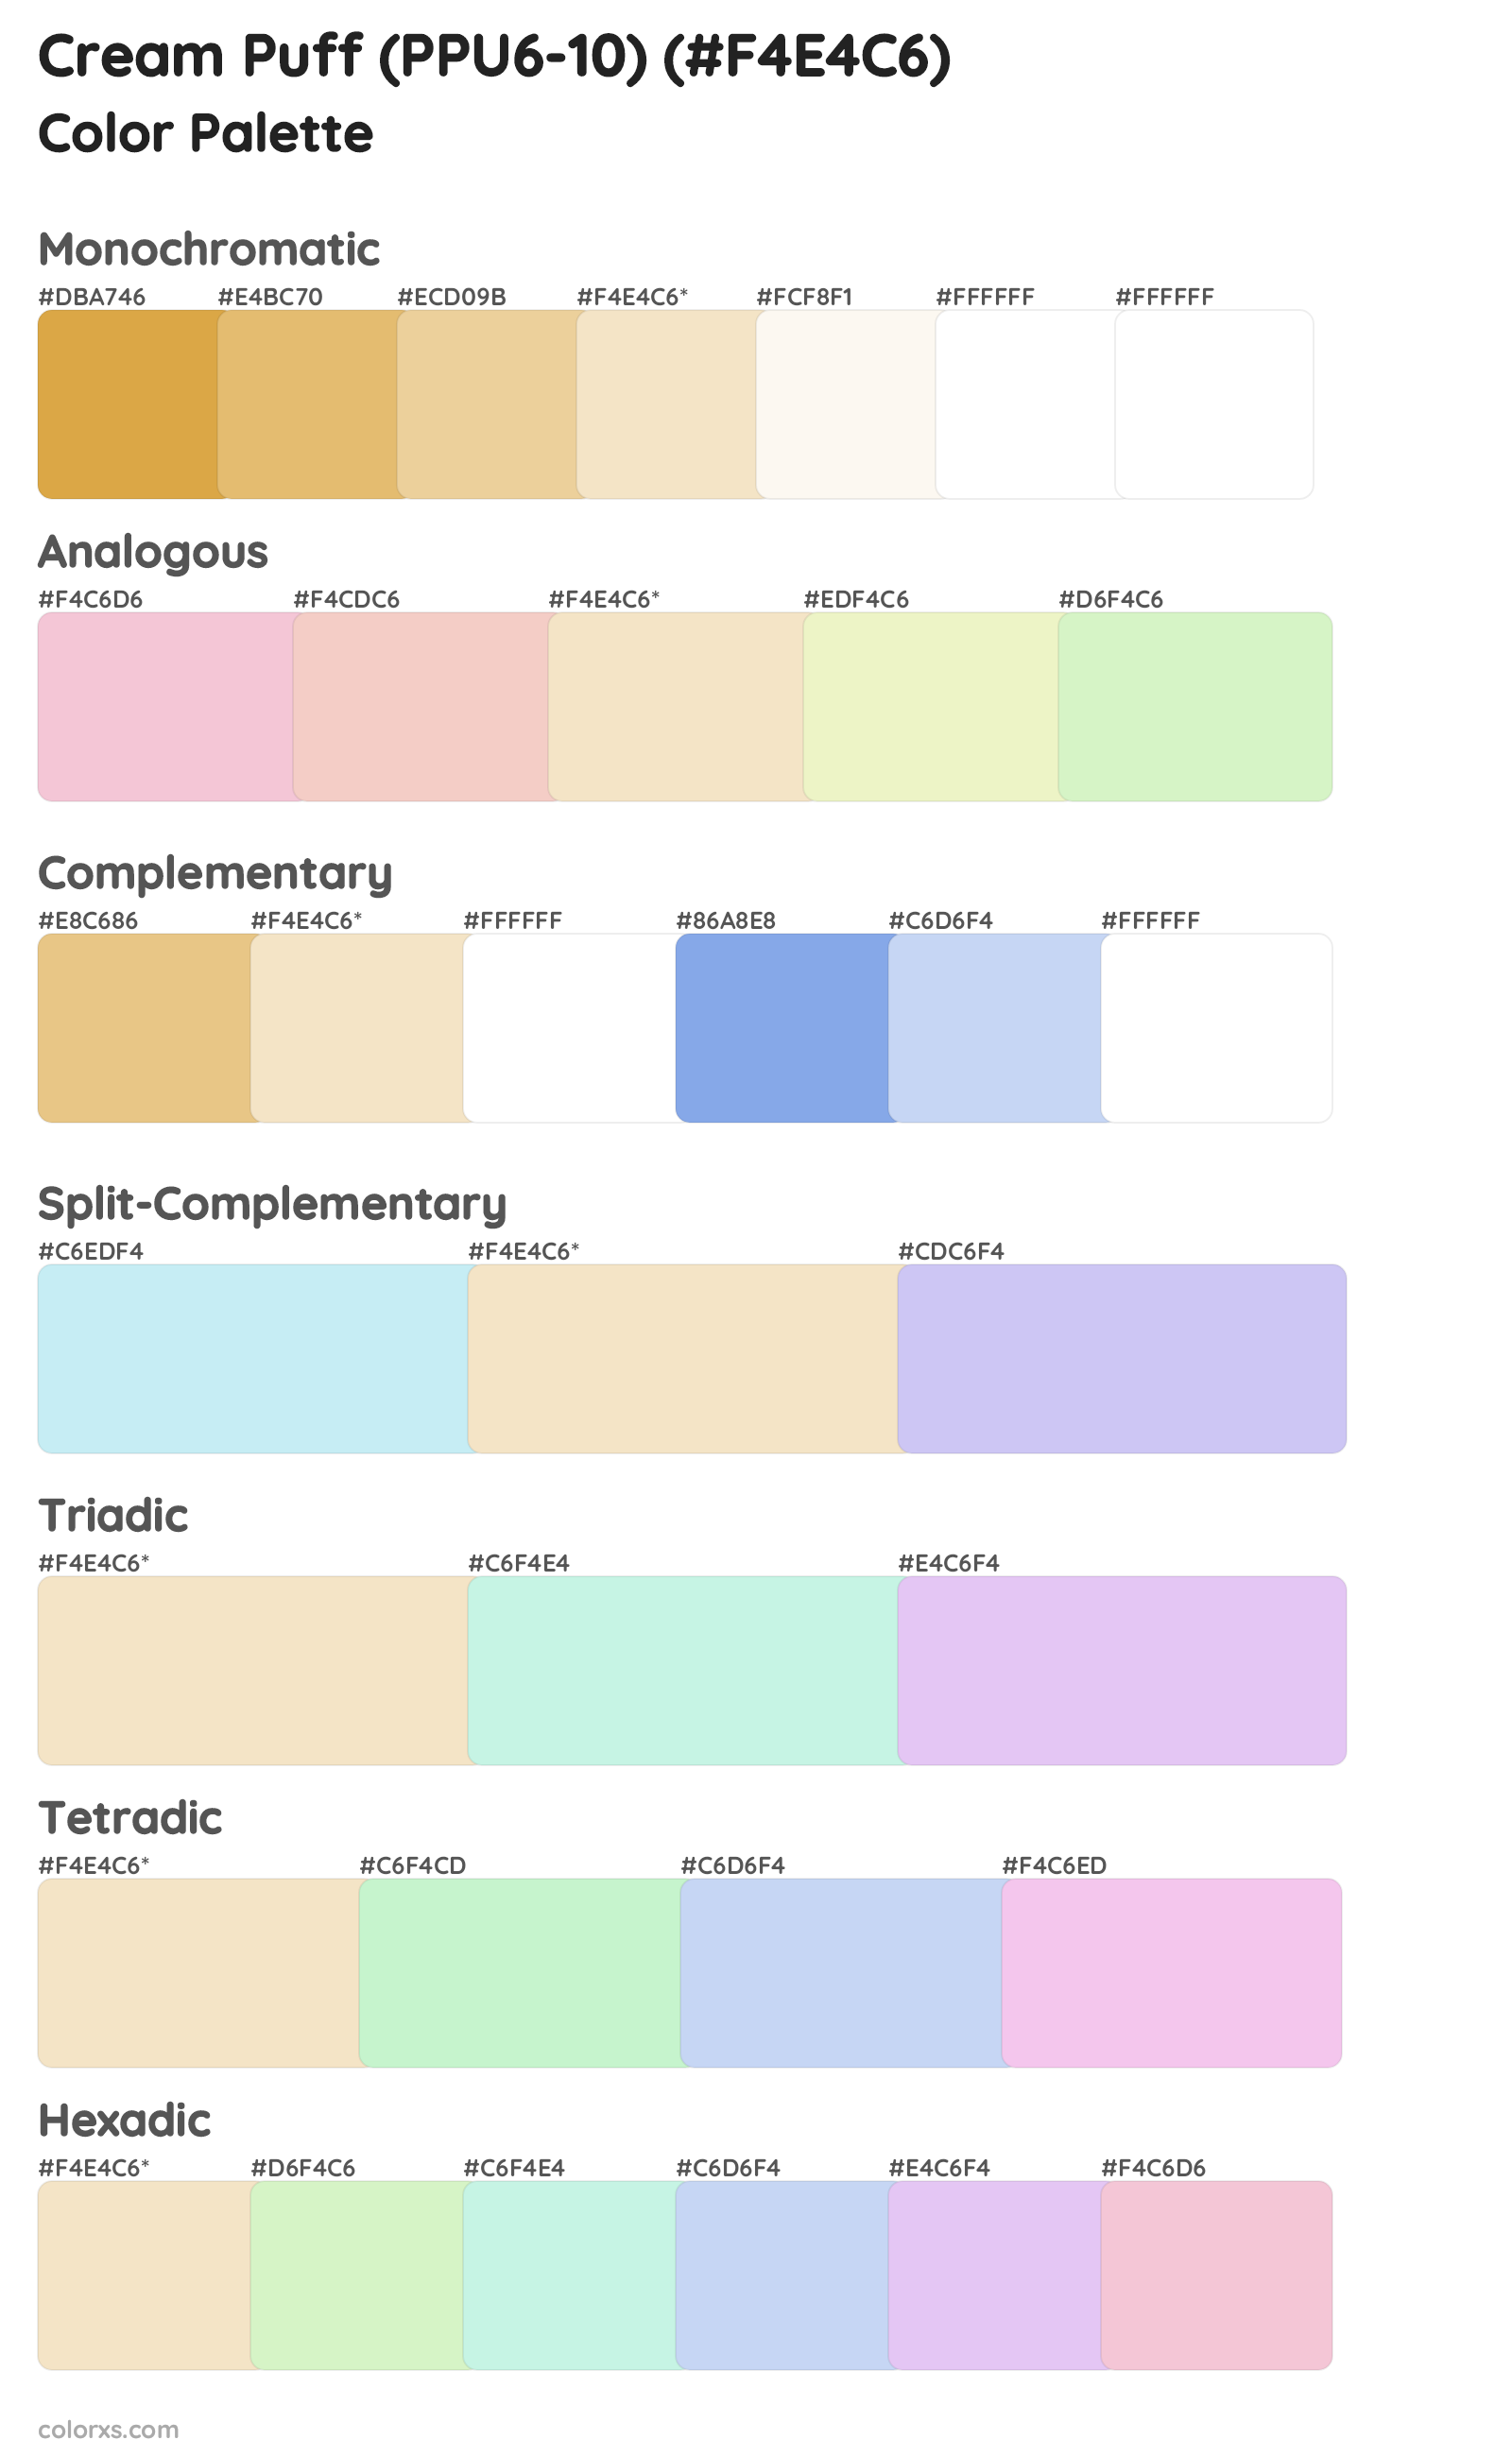 Cream Puff (PPU6-10) Color Scheme Palettes